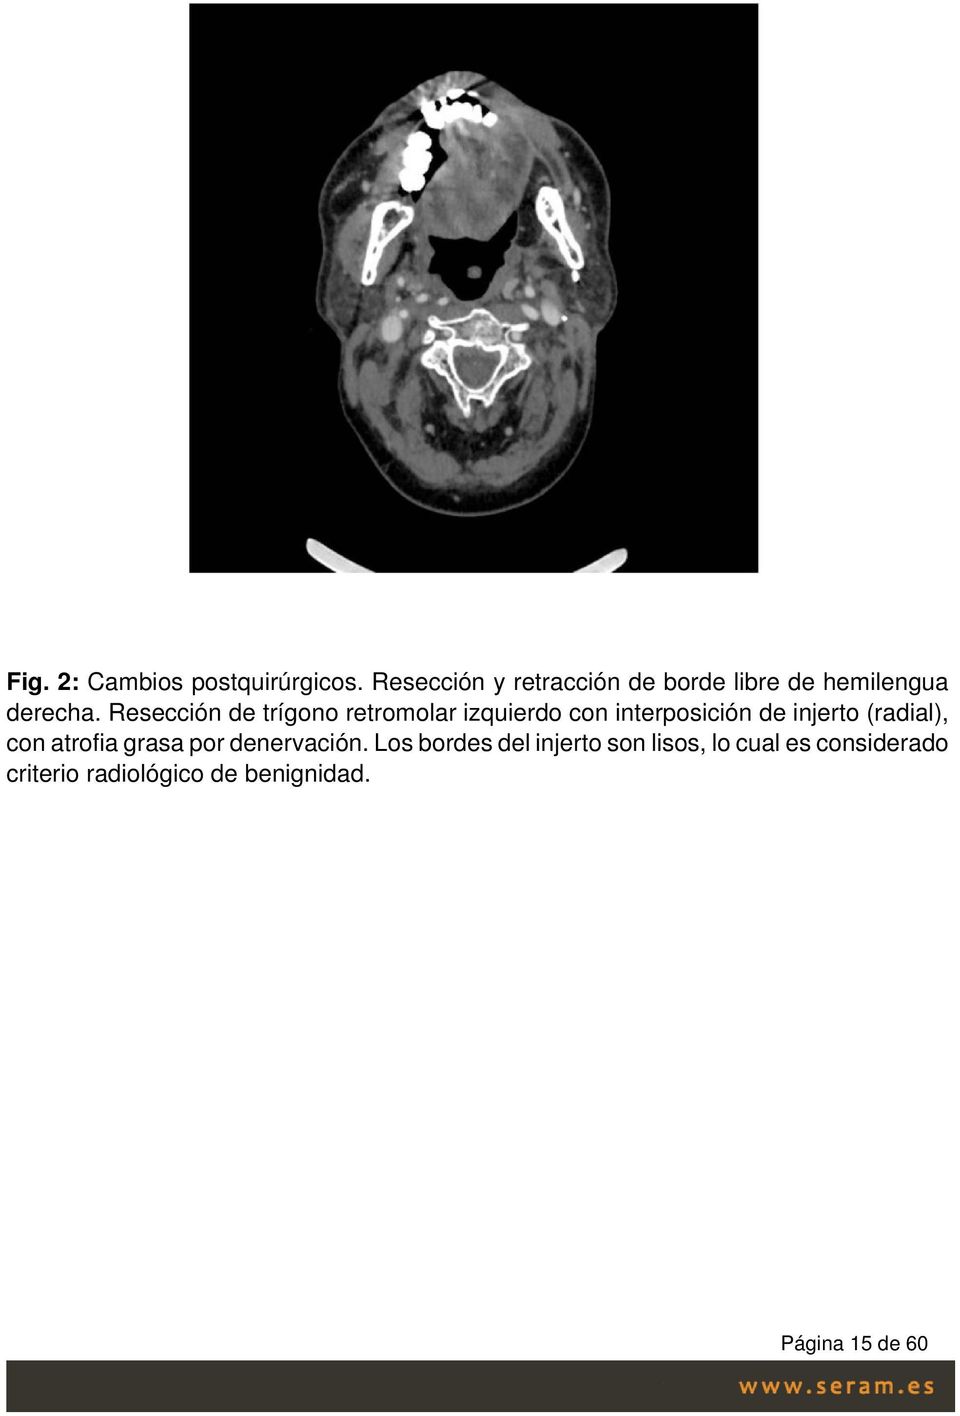 Resección de trígono retromolar izquierdo con interposición de injerto